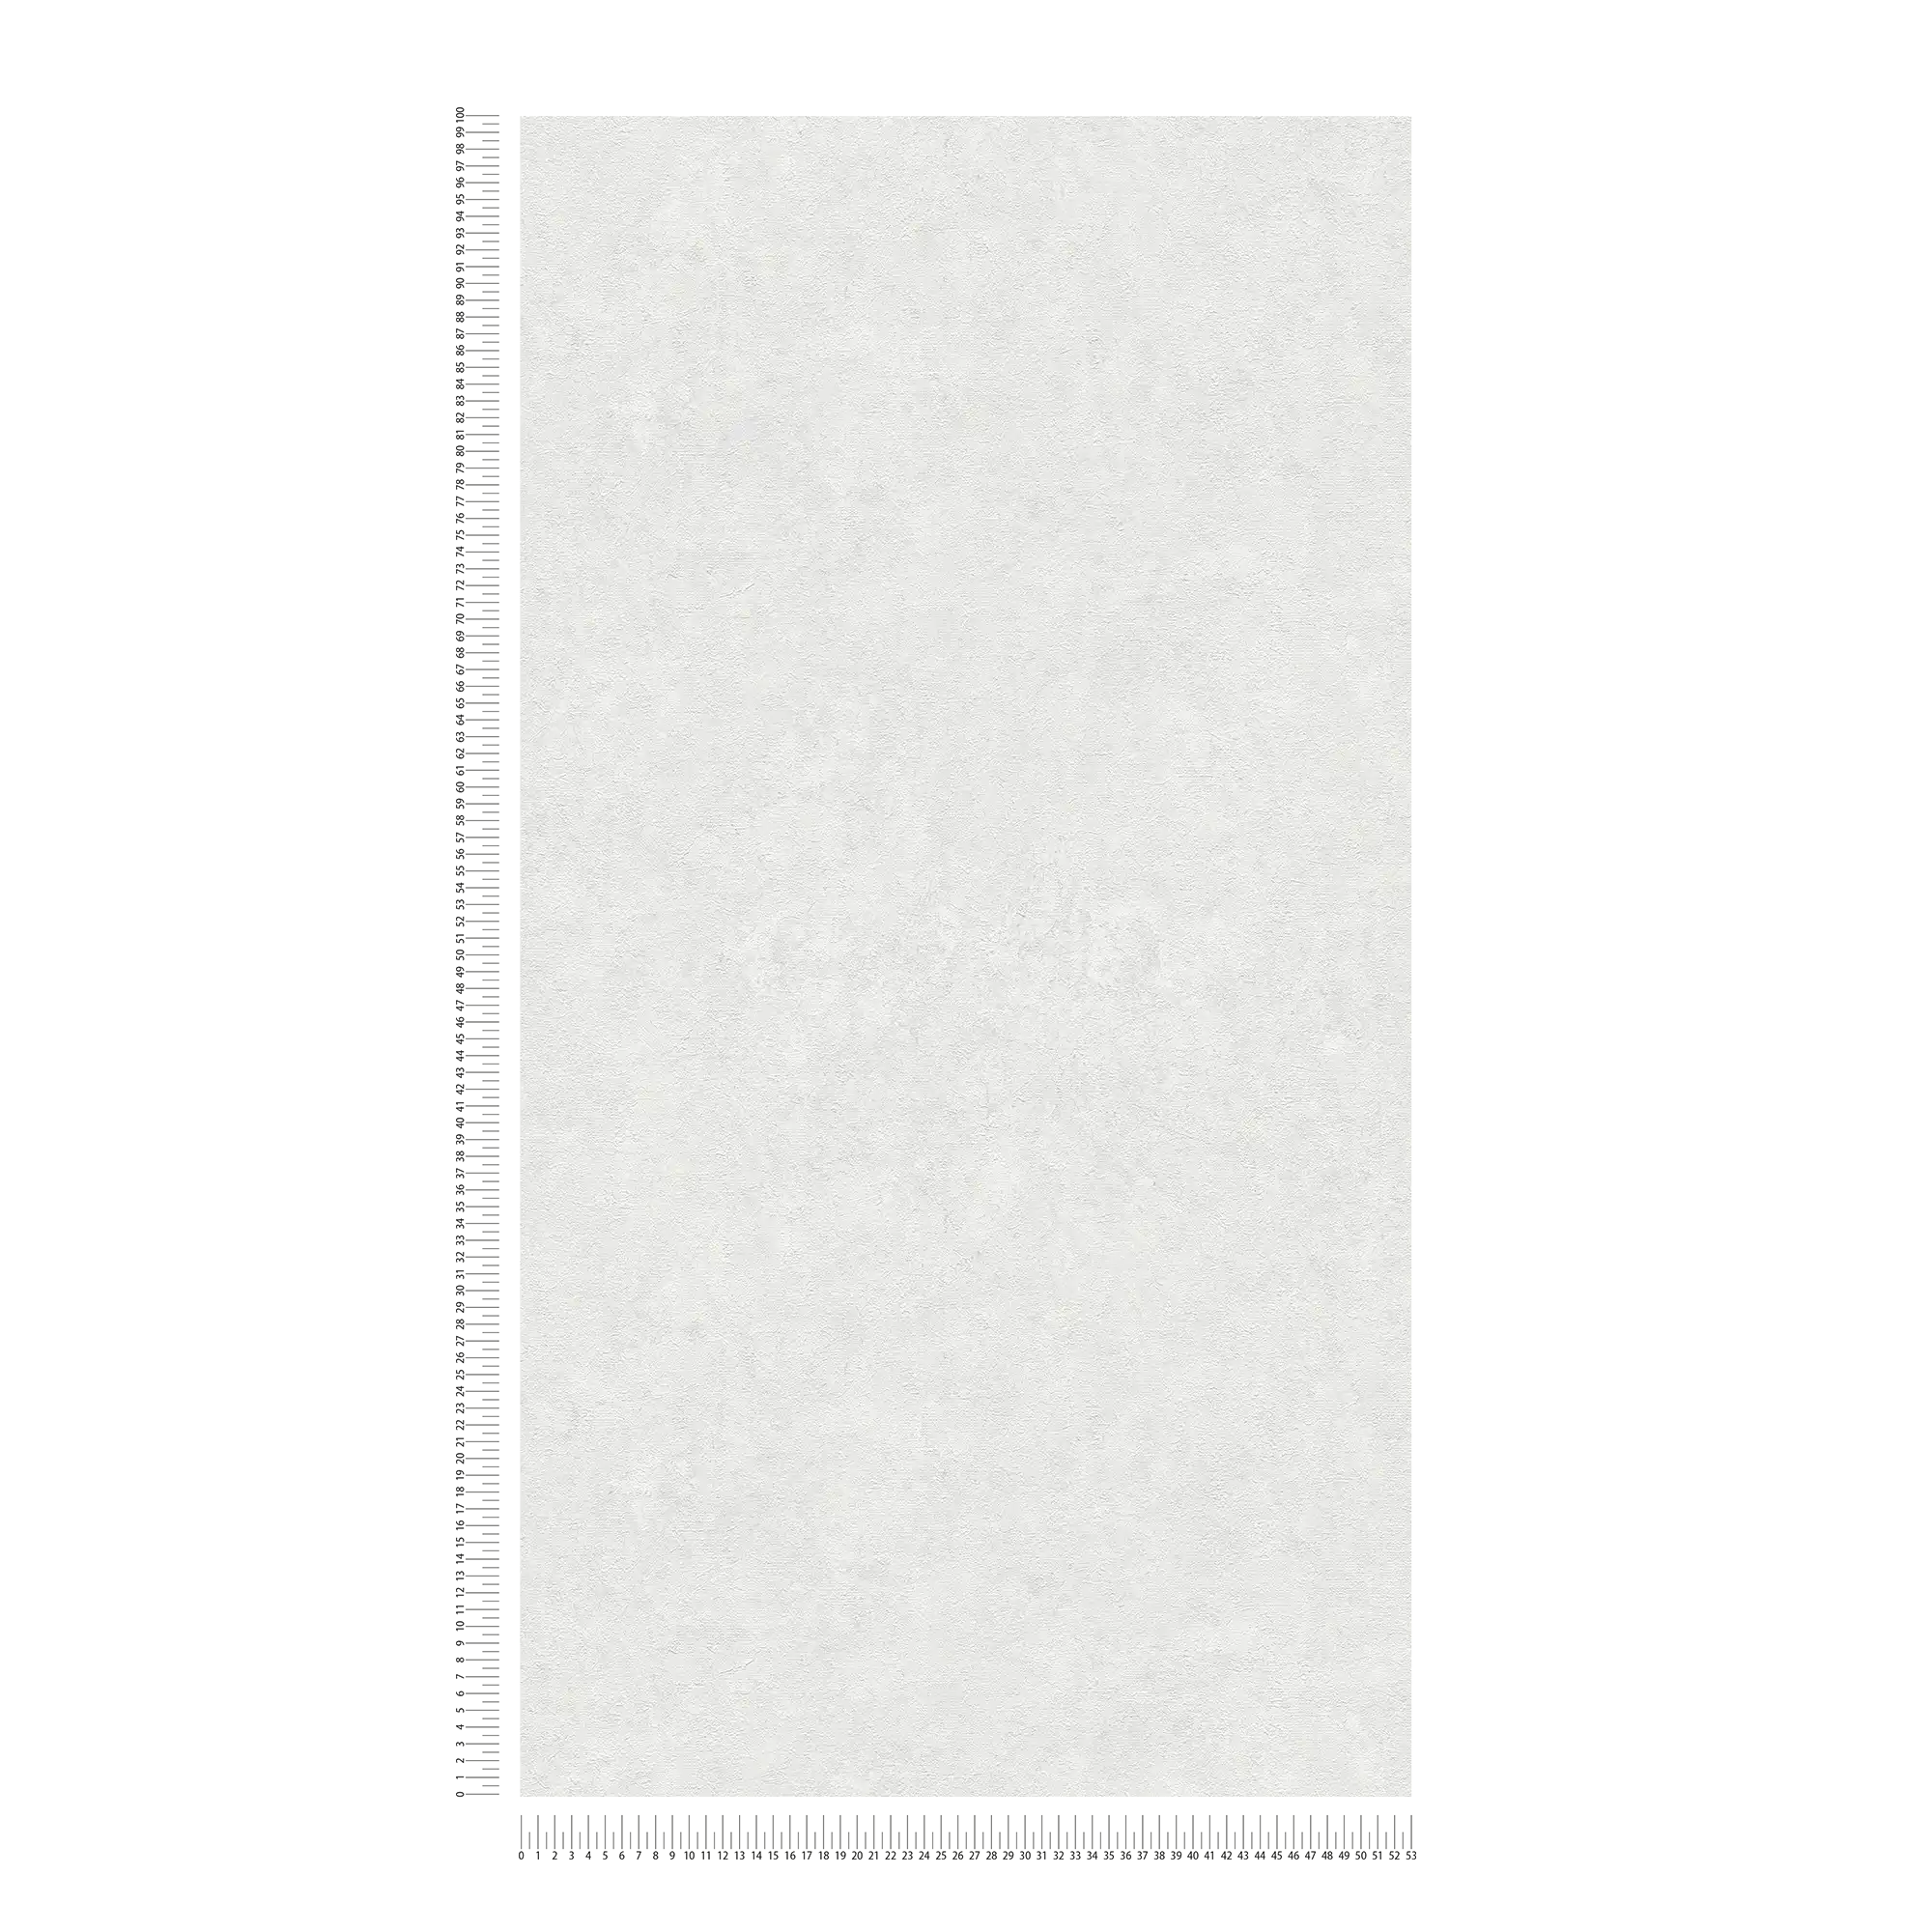             Papier peint uni avec motifs structurés dans des tons subtils - blanc, gris
        